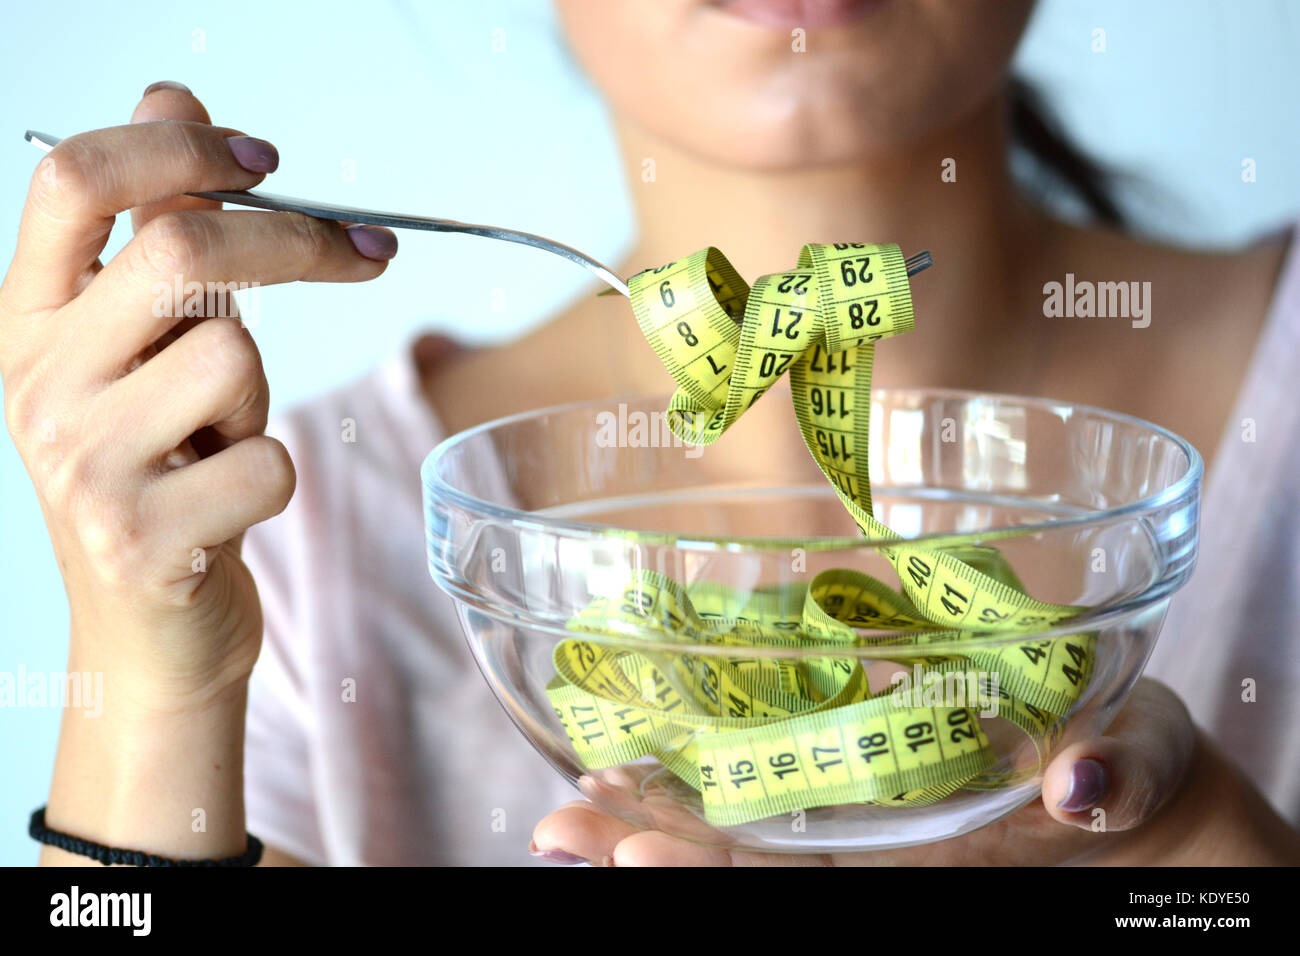 Junge Frau auf Diät essen eine gelbe Messung Band aus einem transparenten Schüssel, abstraktes Bild Stockfoto